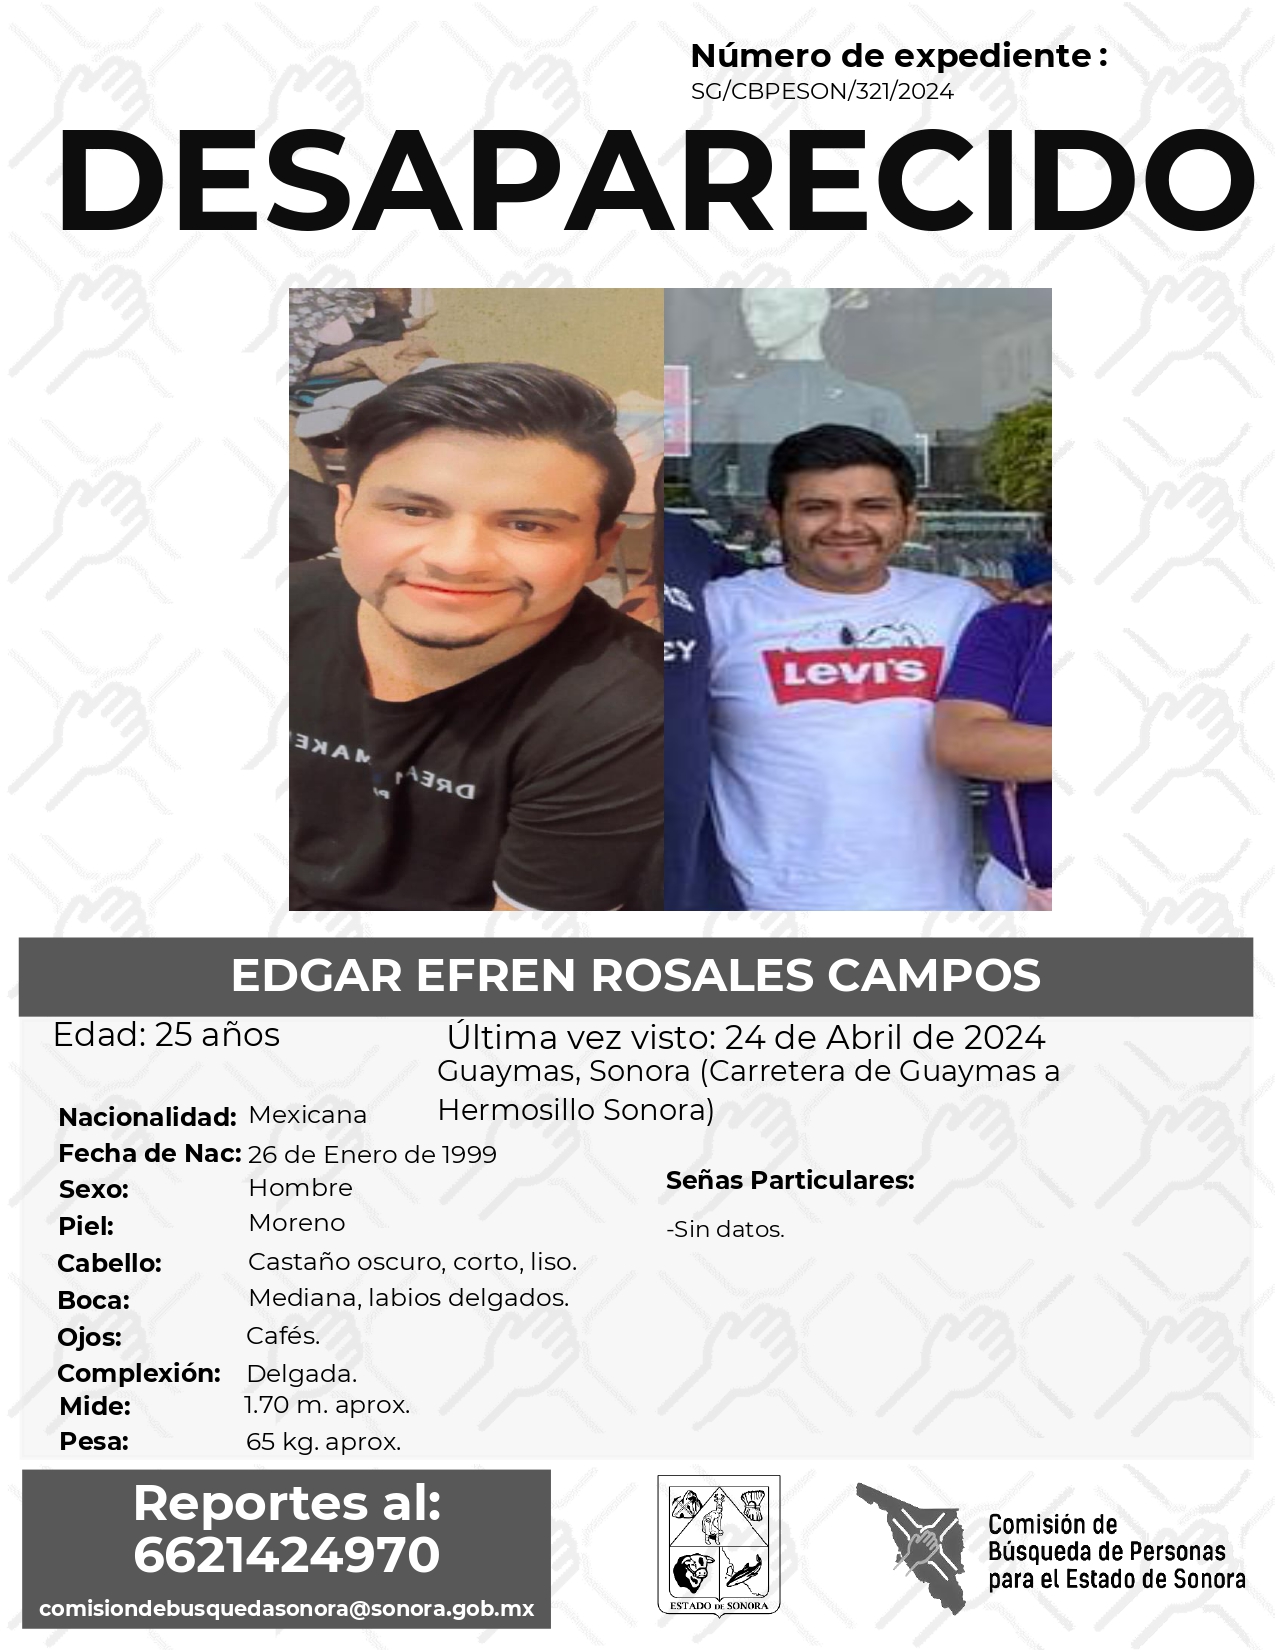 EDGAR EFREN ROSALES CAMPOS - DESAPARECIDO